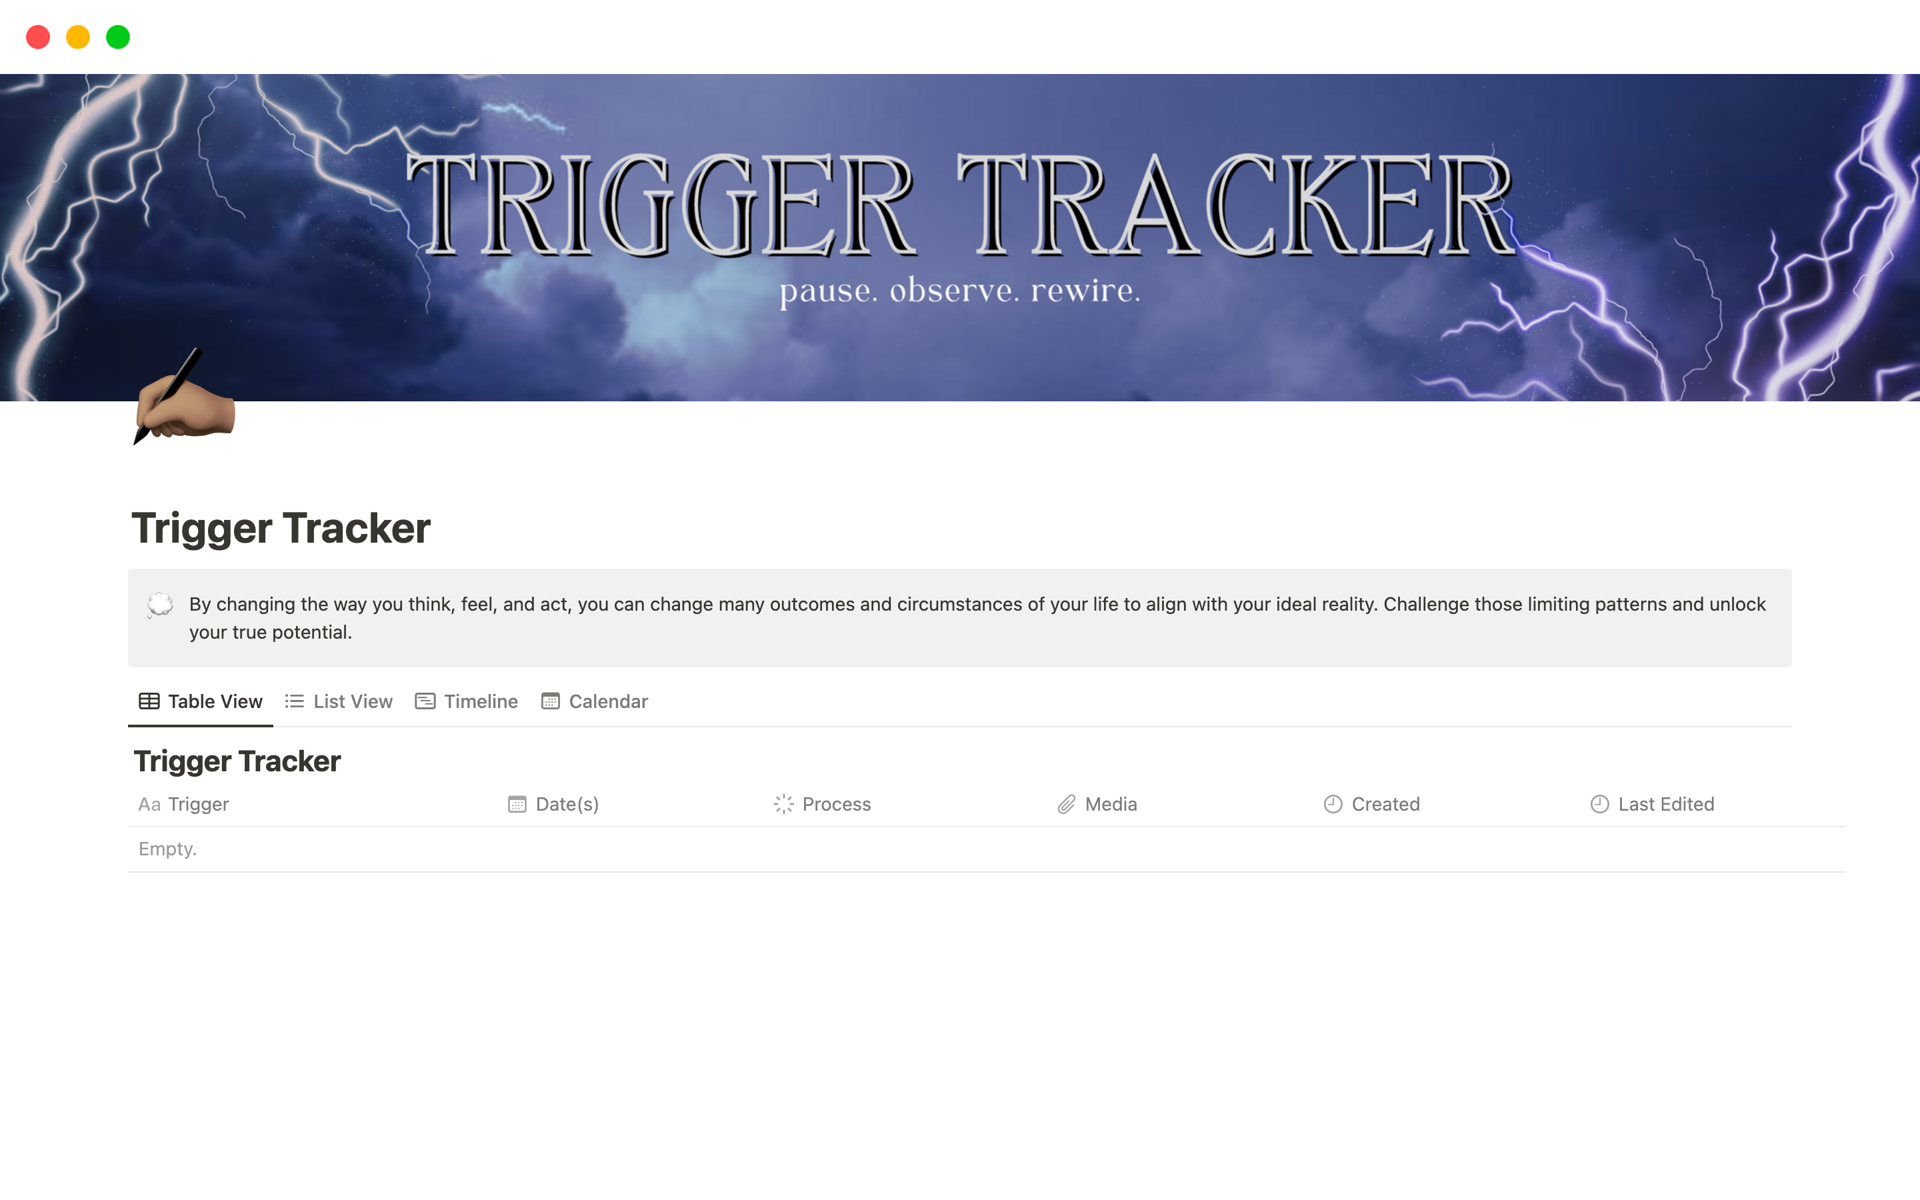 Vista previa de una plantilla para Trigger Tracker